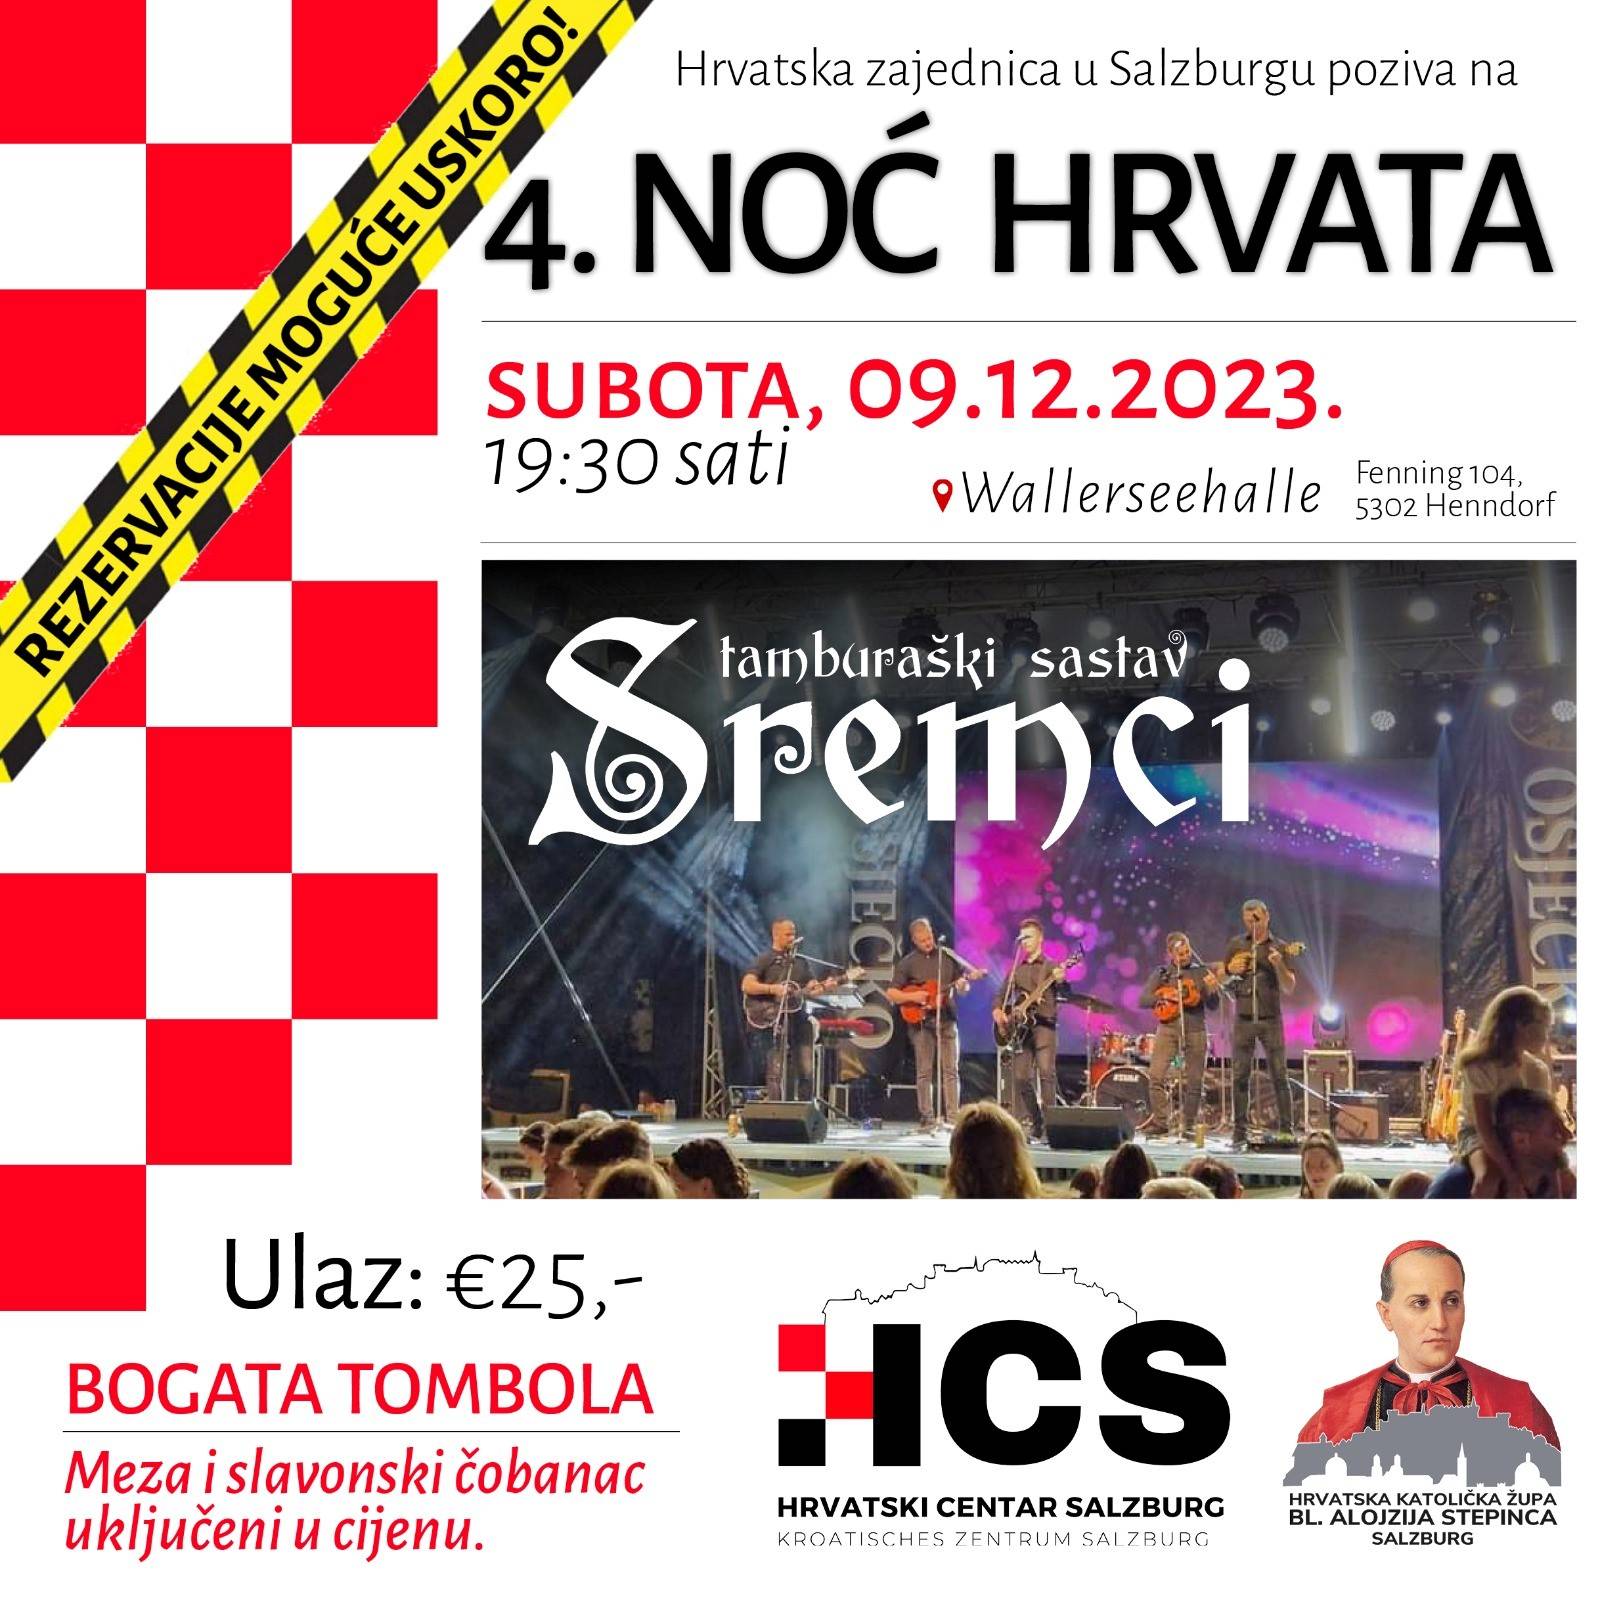 Hrvatski centar Salzburg i Hrvatska katolička župa Salzburg pozivaju na VI. Noć Hrvata